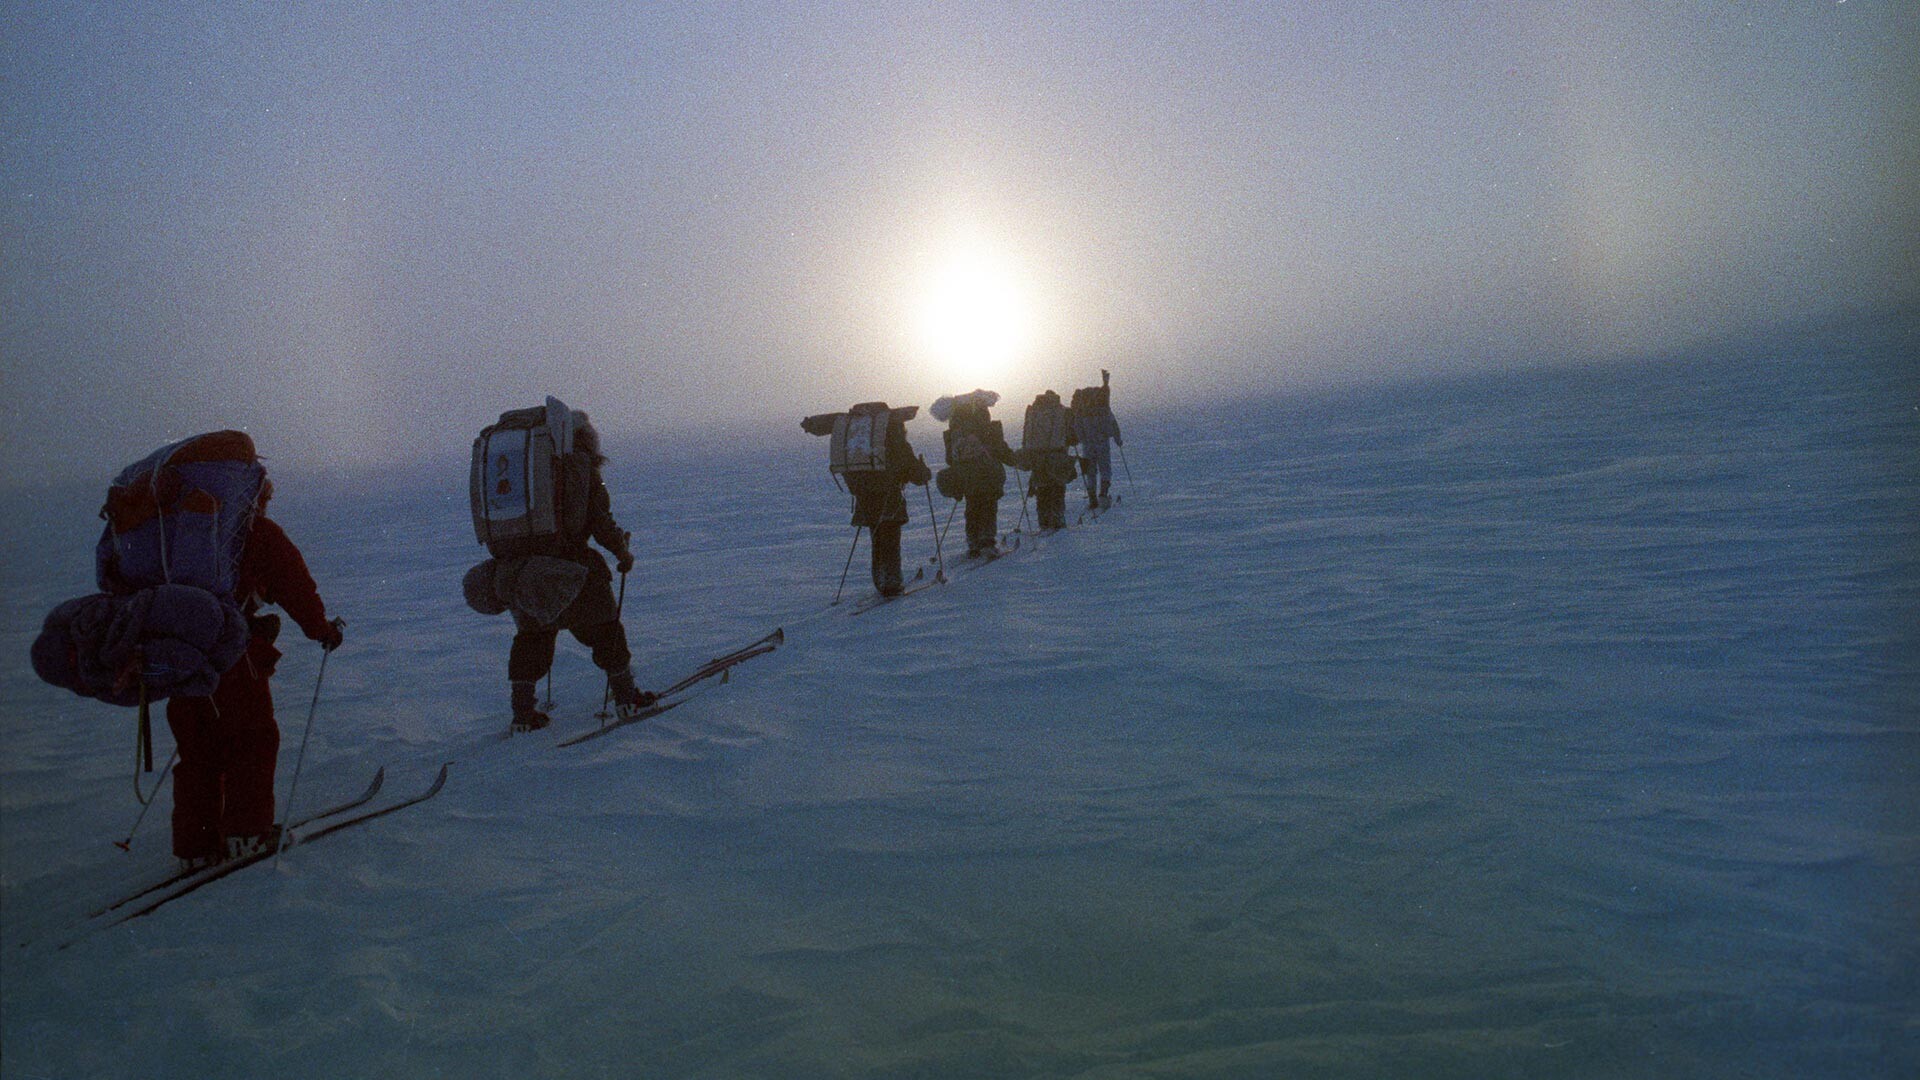 Membros da expedição cruzando a Baía Frobisher